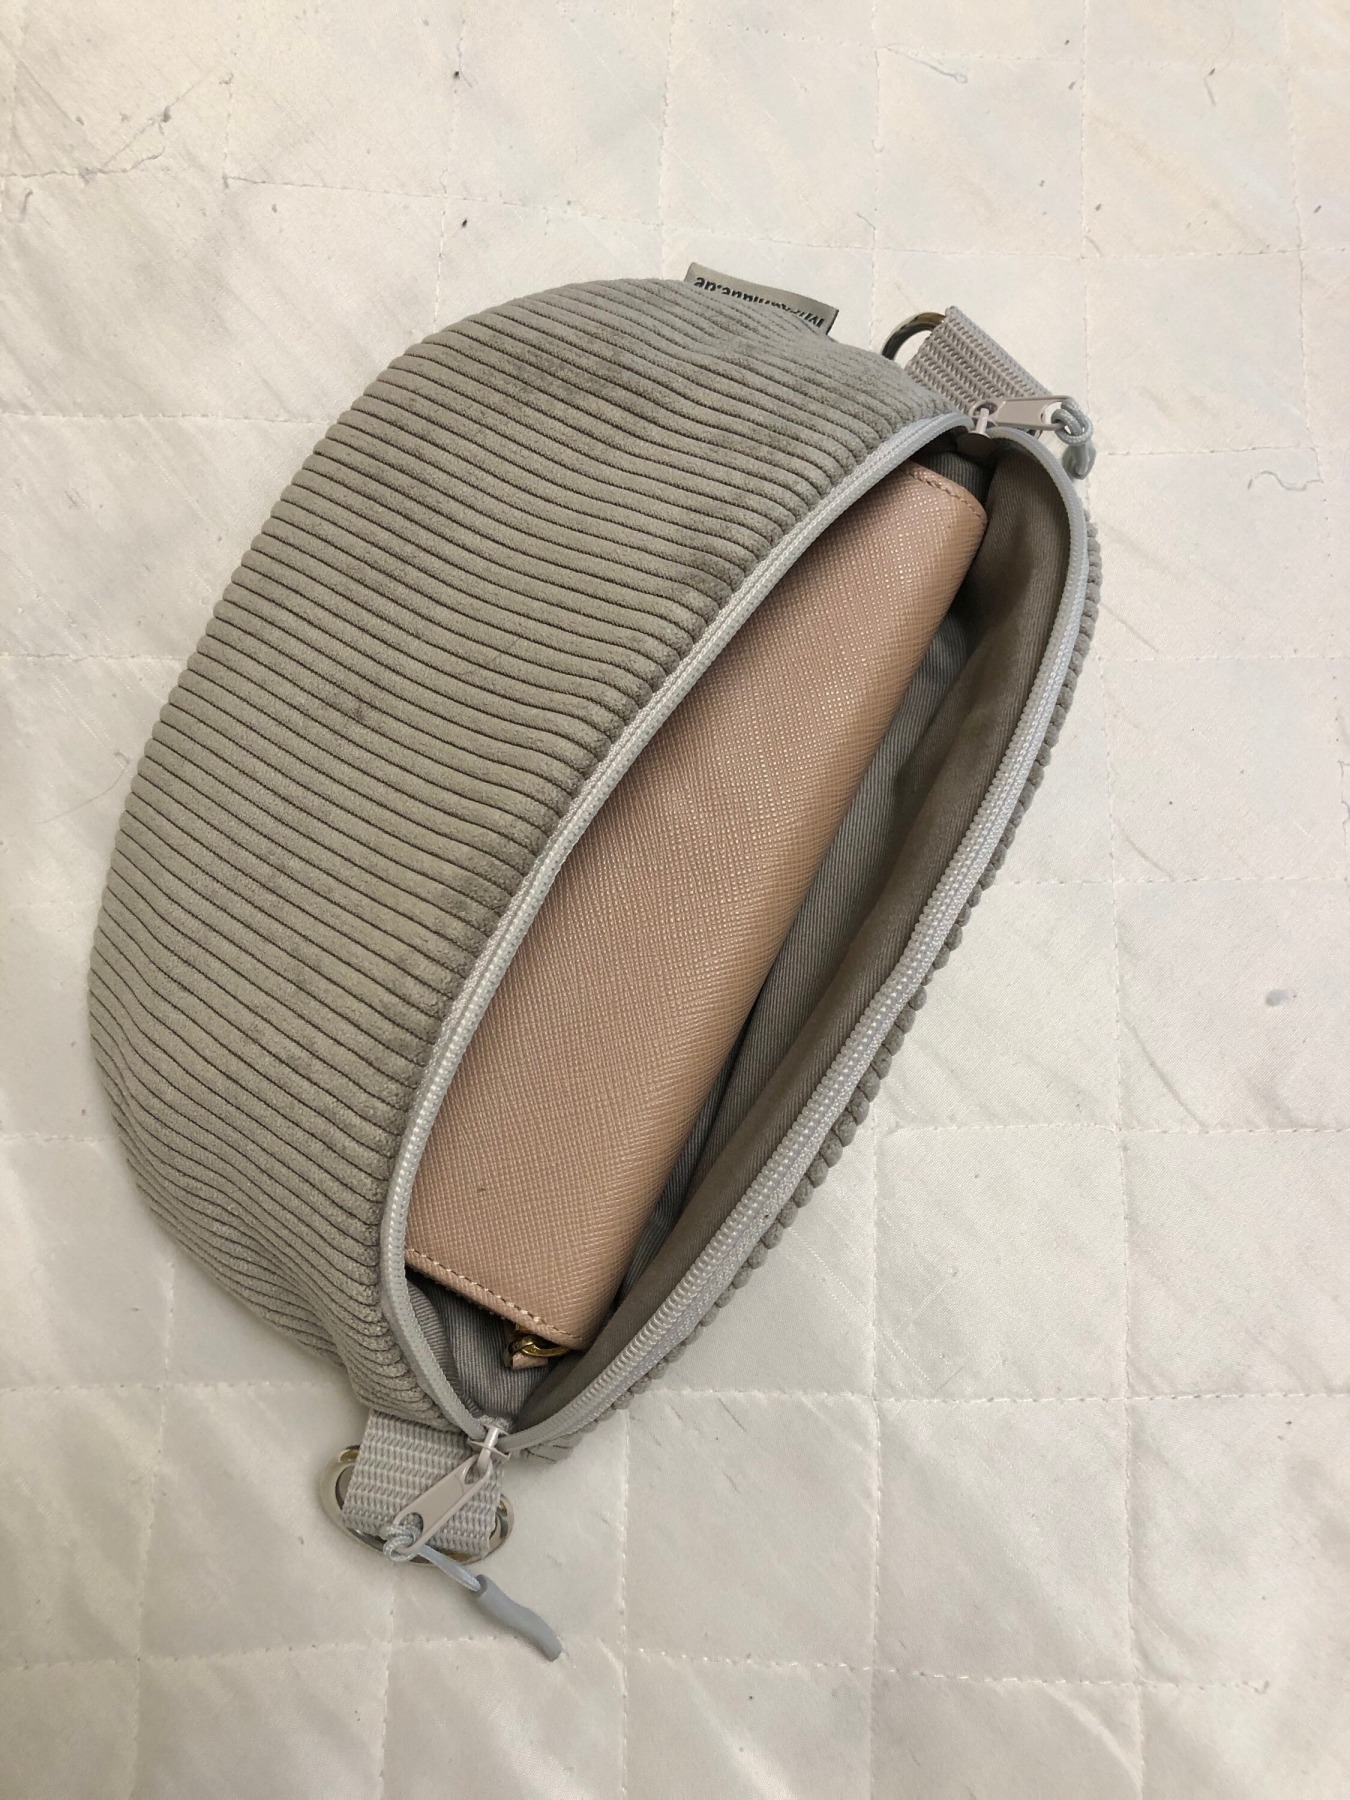 Bauchtasche XL Crossbag Cord graubeige Hipbag leicht und praktisch Kord Cordstoff grau beige mit